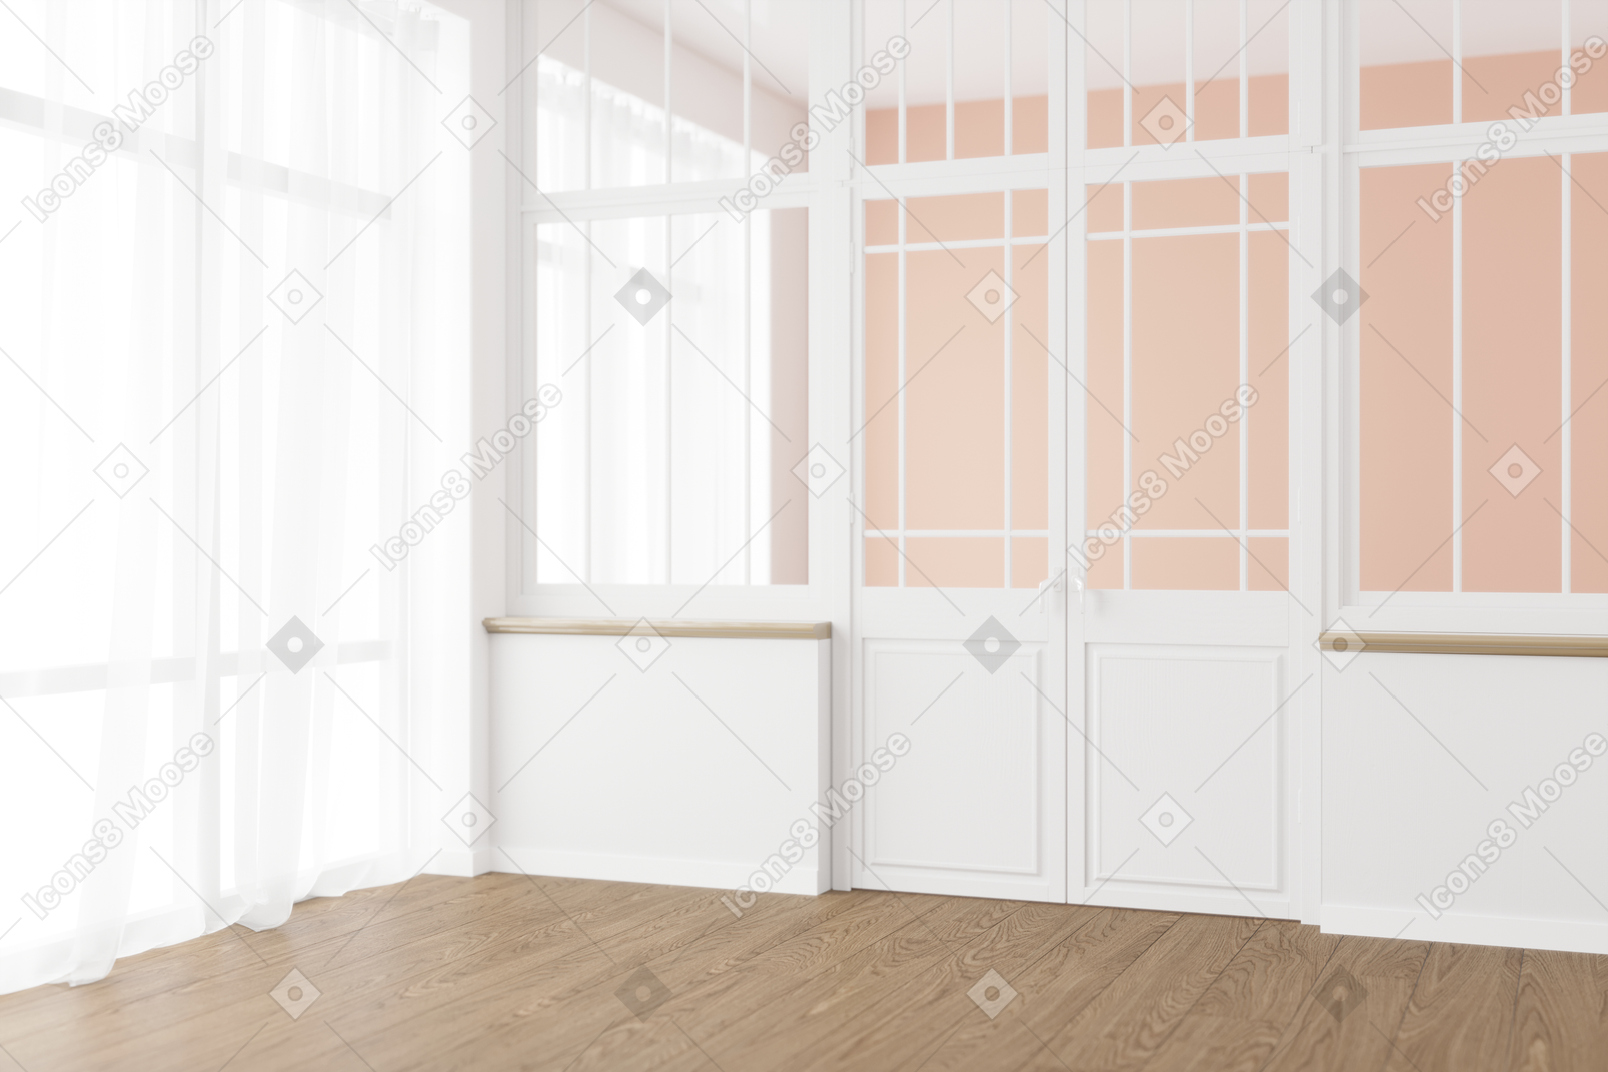 有法式门、大窗户和透明窗帘的房间